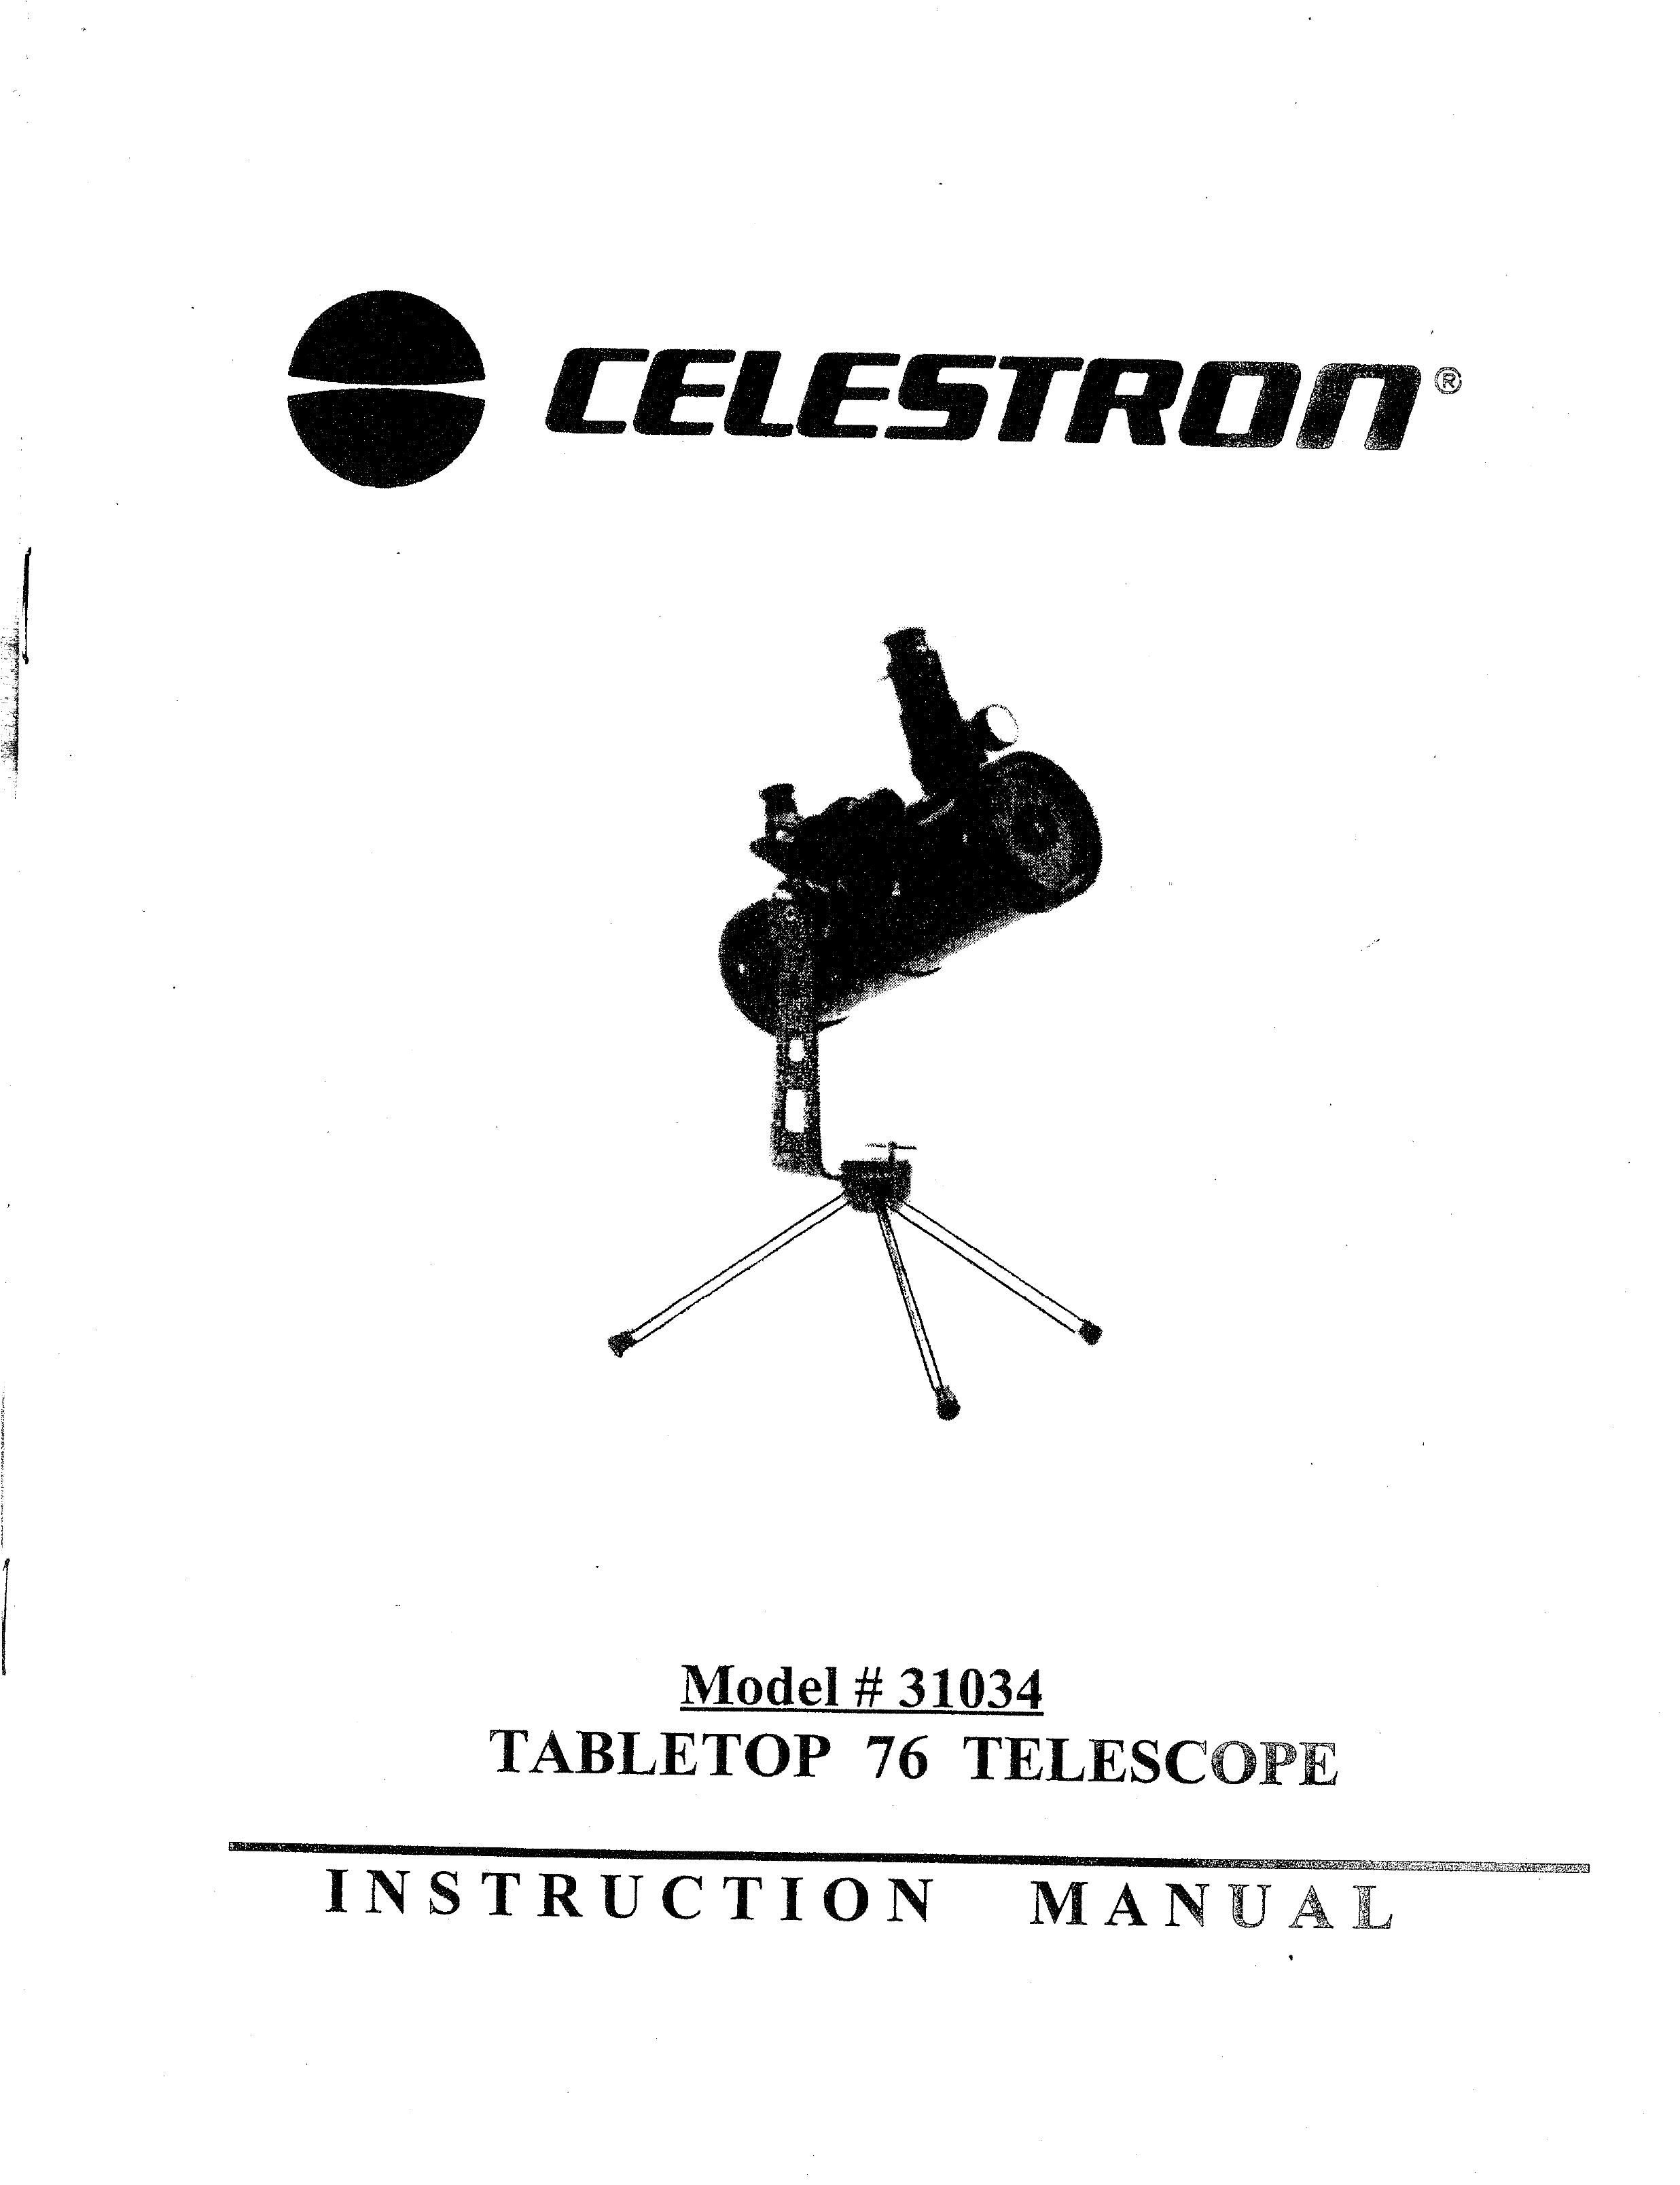 Celestron 31034 Telescope User Manual